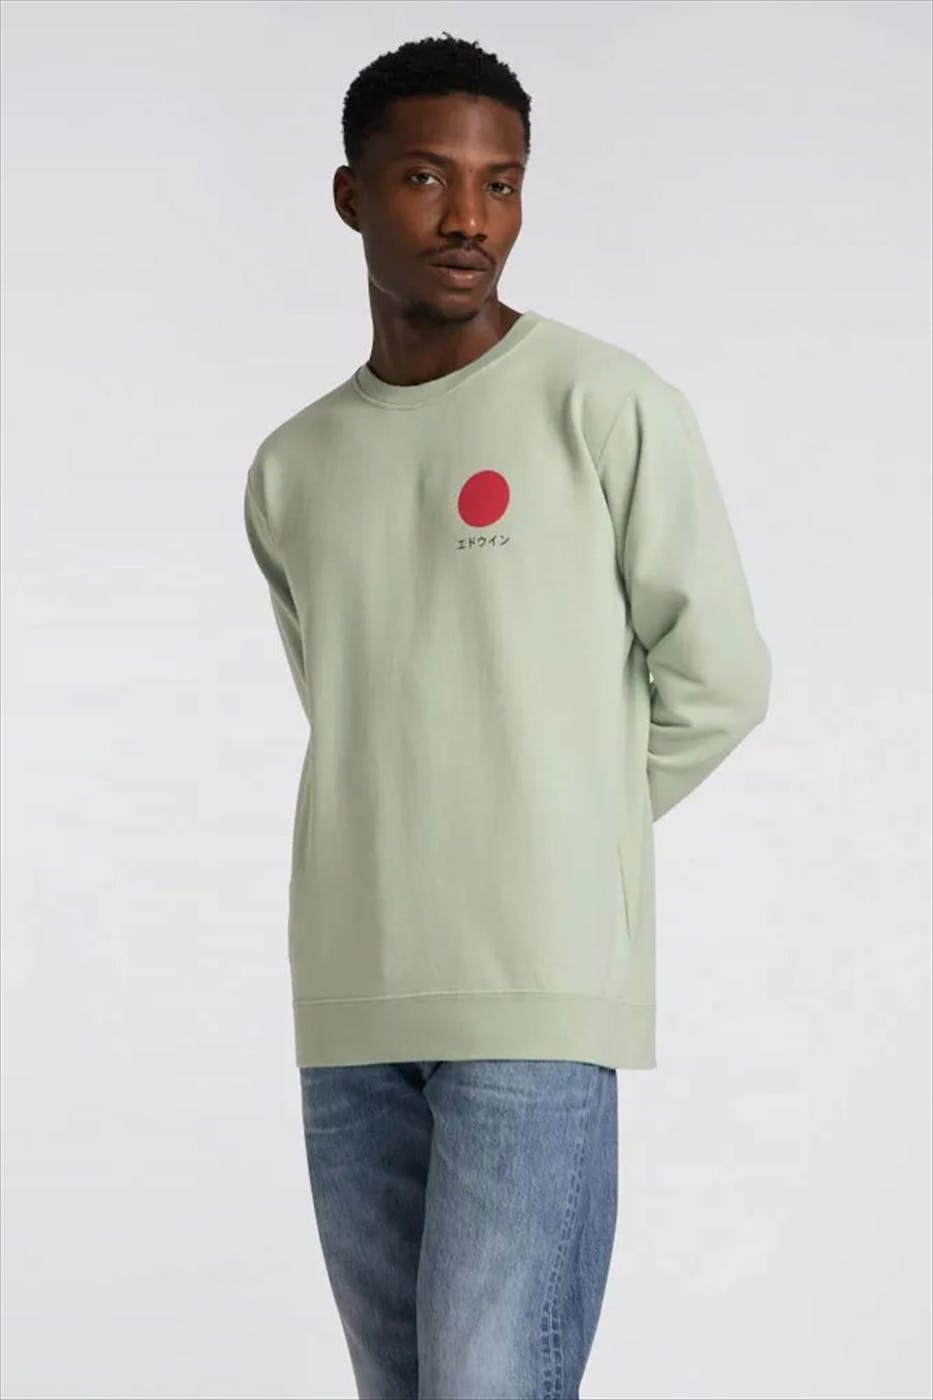 Edwin - Muntgroene Japanese Sun sweater